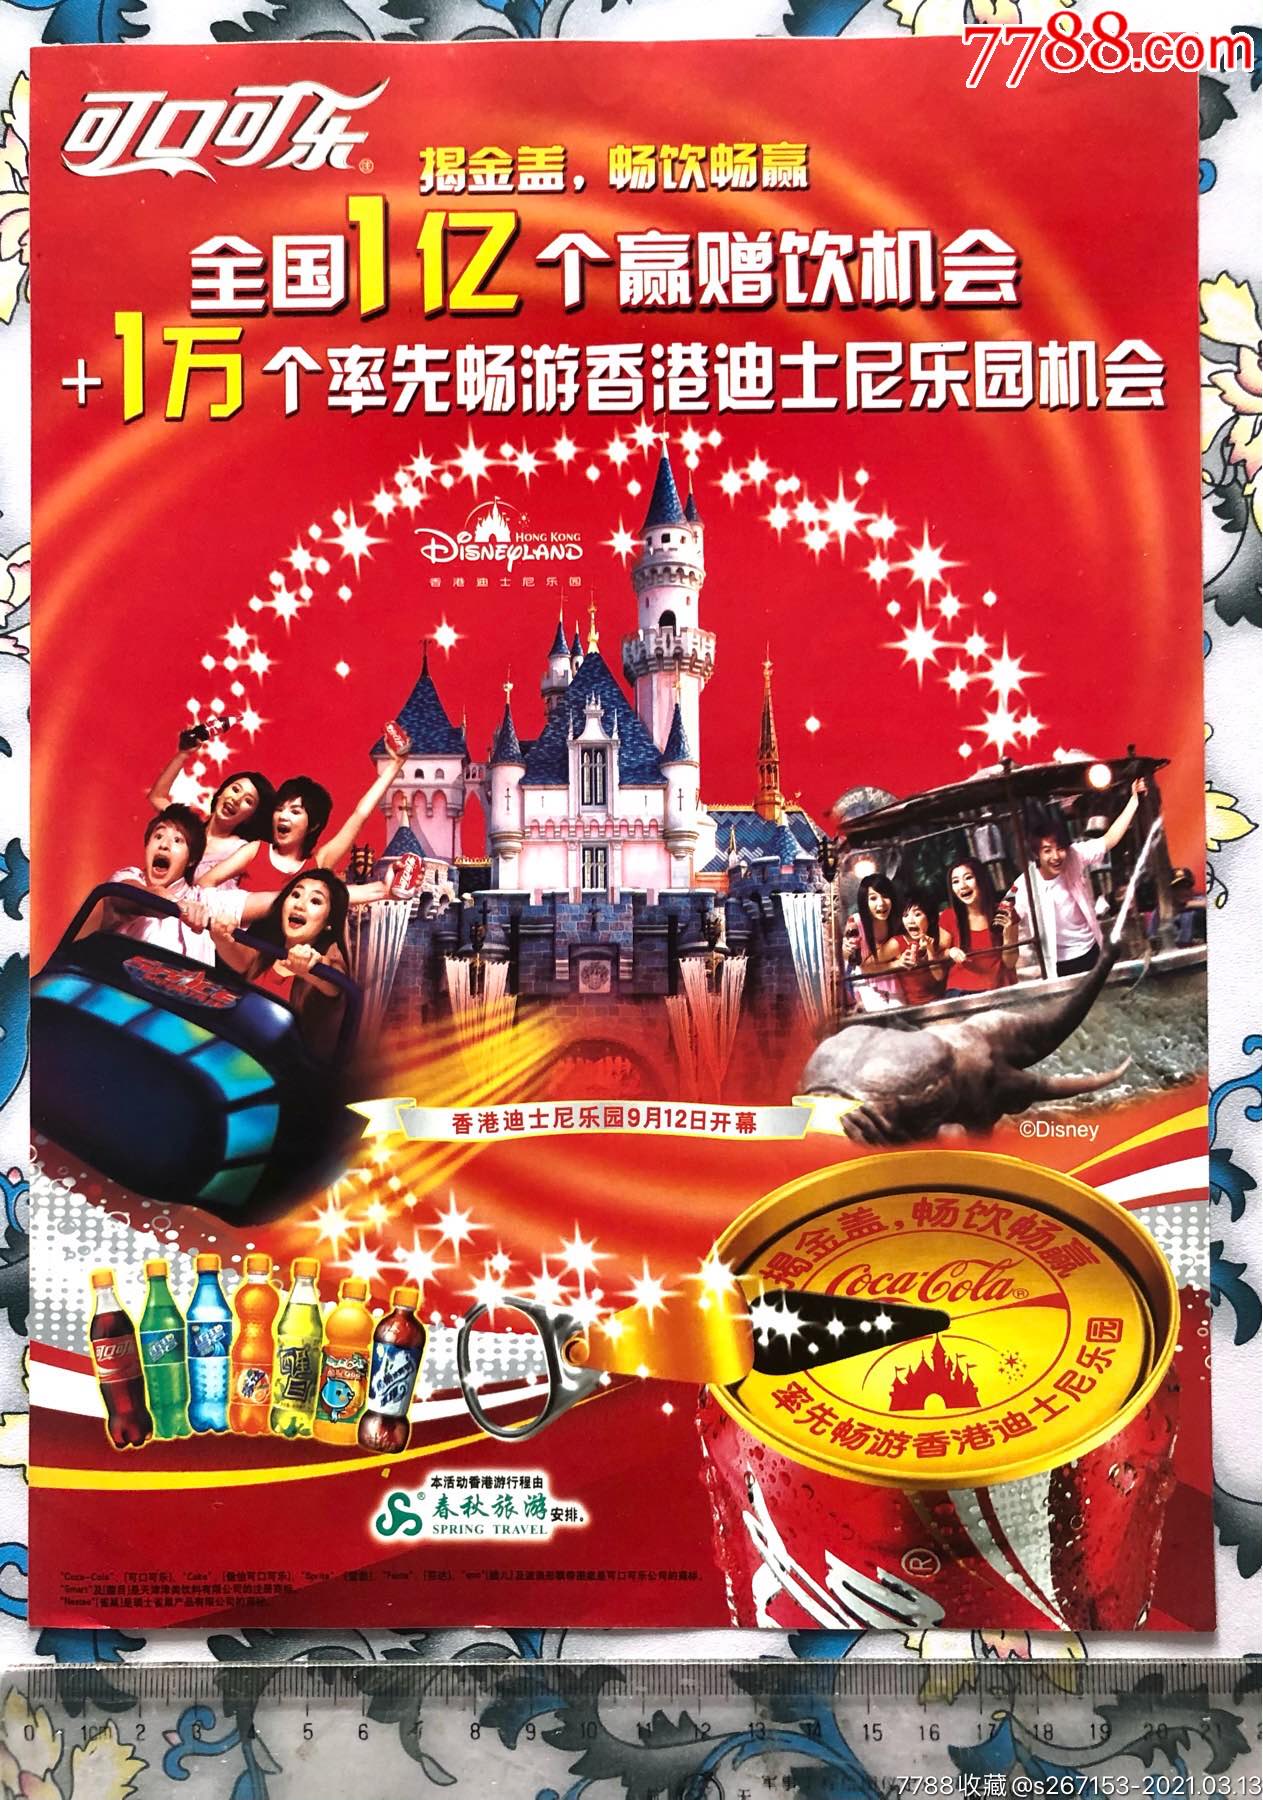 可口可乐2005年揭金盖畅游香港迪士尼乐园促销广告